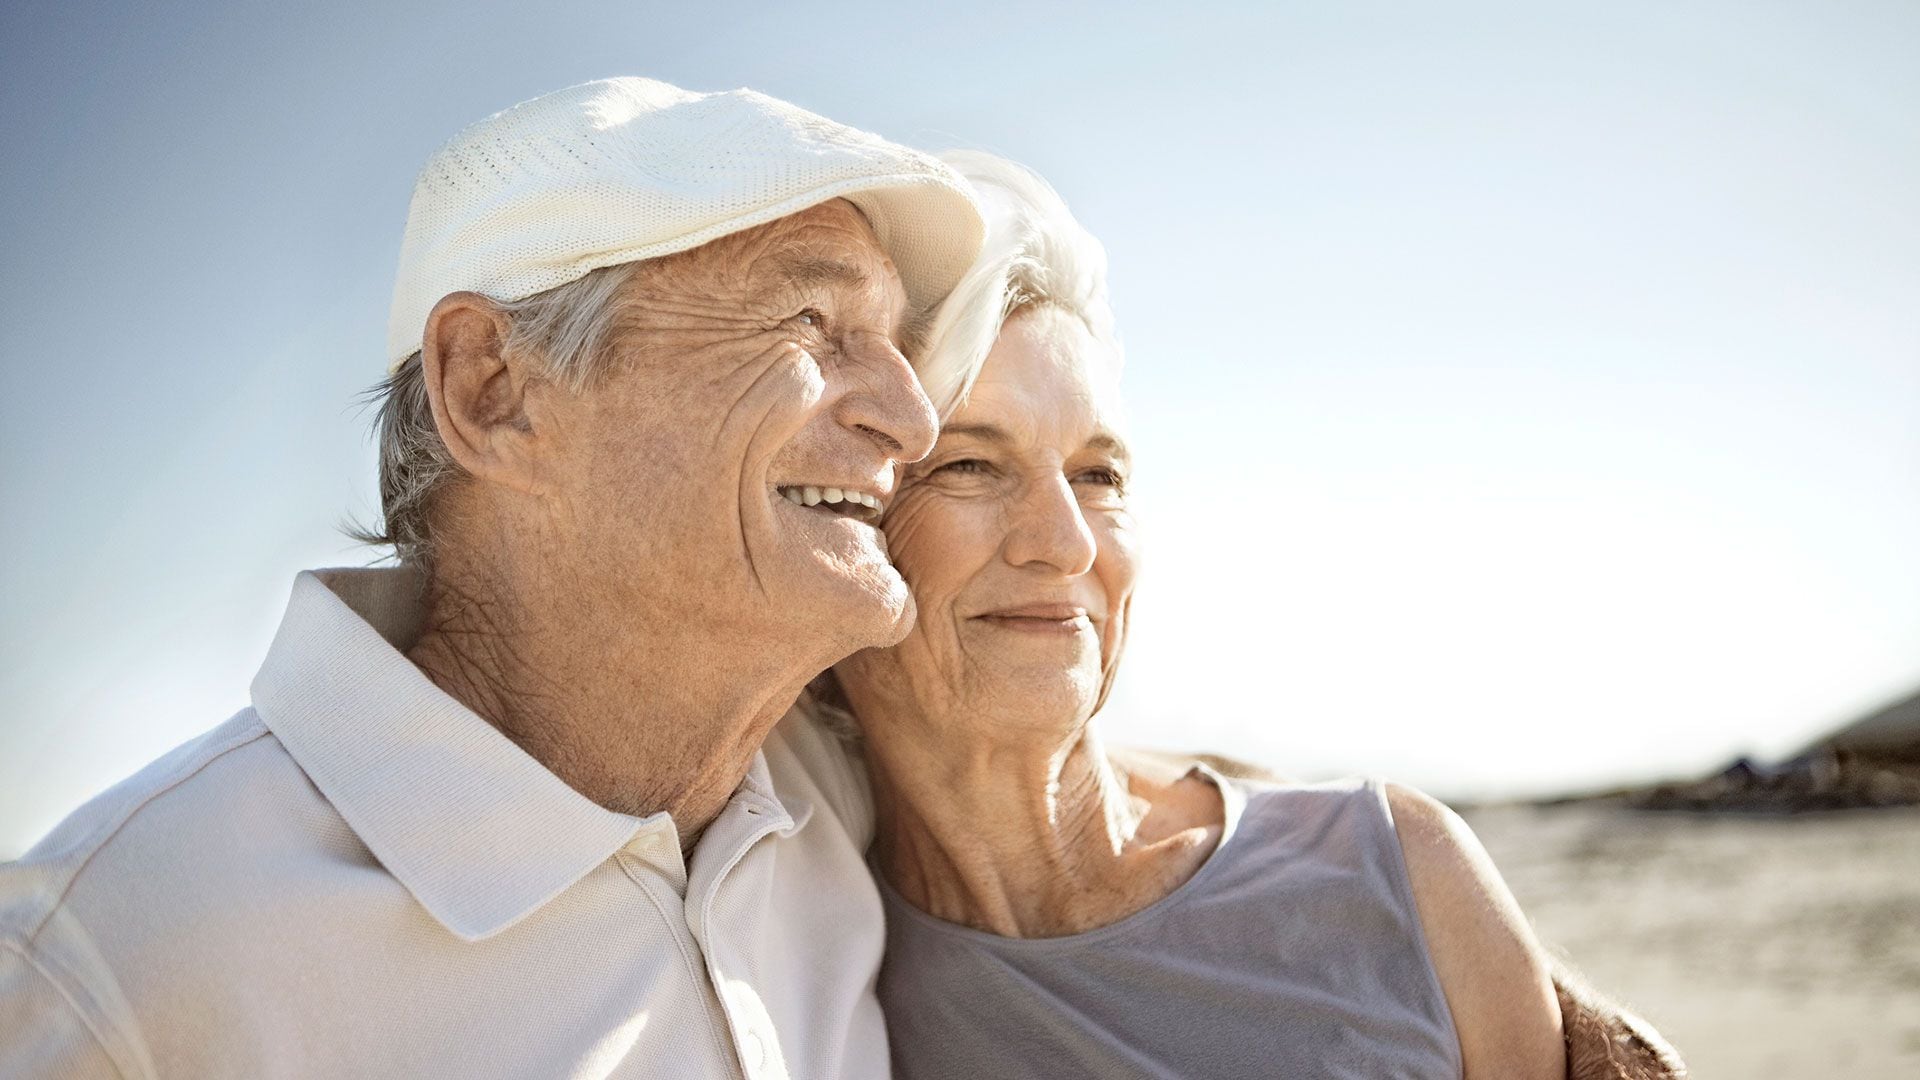 Los "superagers" o centenarios tienen características en común: actividad, positividad y compromiso activo con la vida
Gettyimages